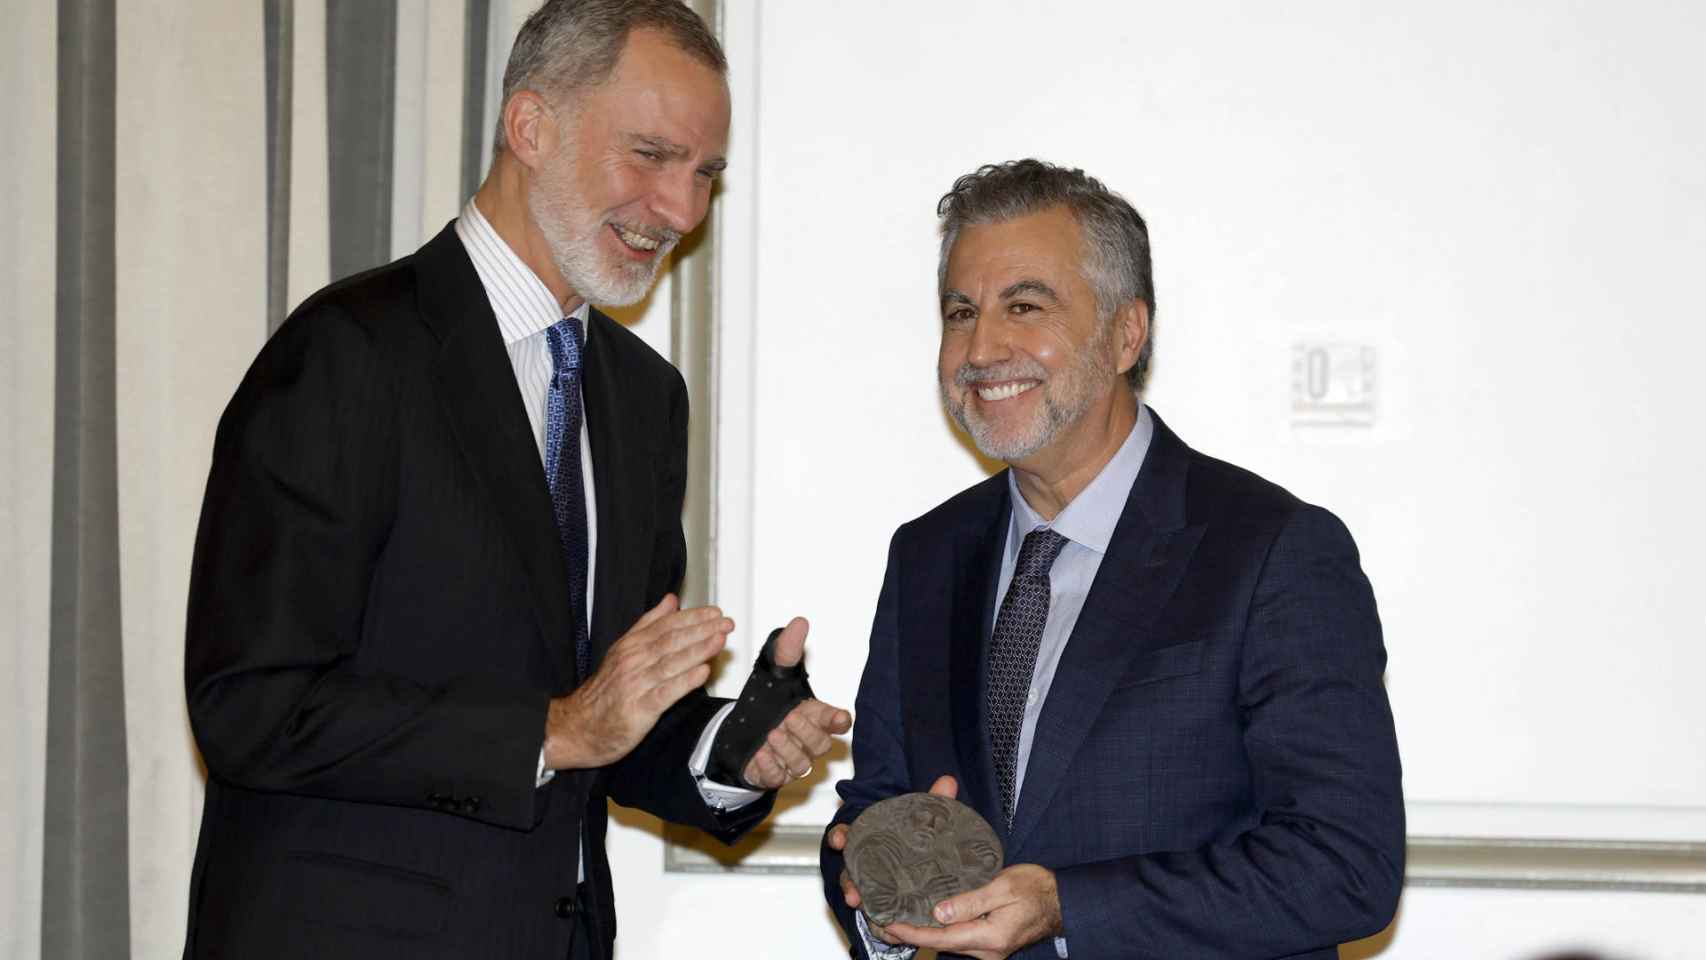 El rey Felipe VI entrega el Premio de Periodismo Francisco Cerecedo a Carlos Alsina.